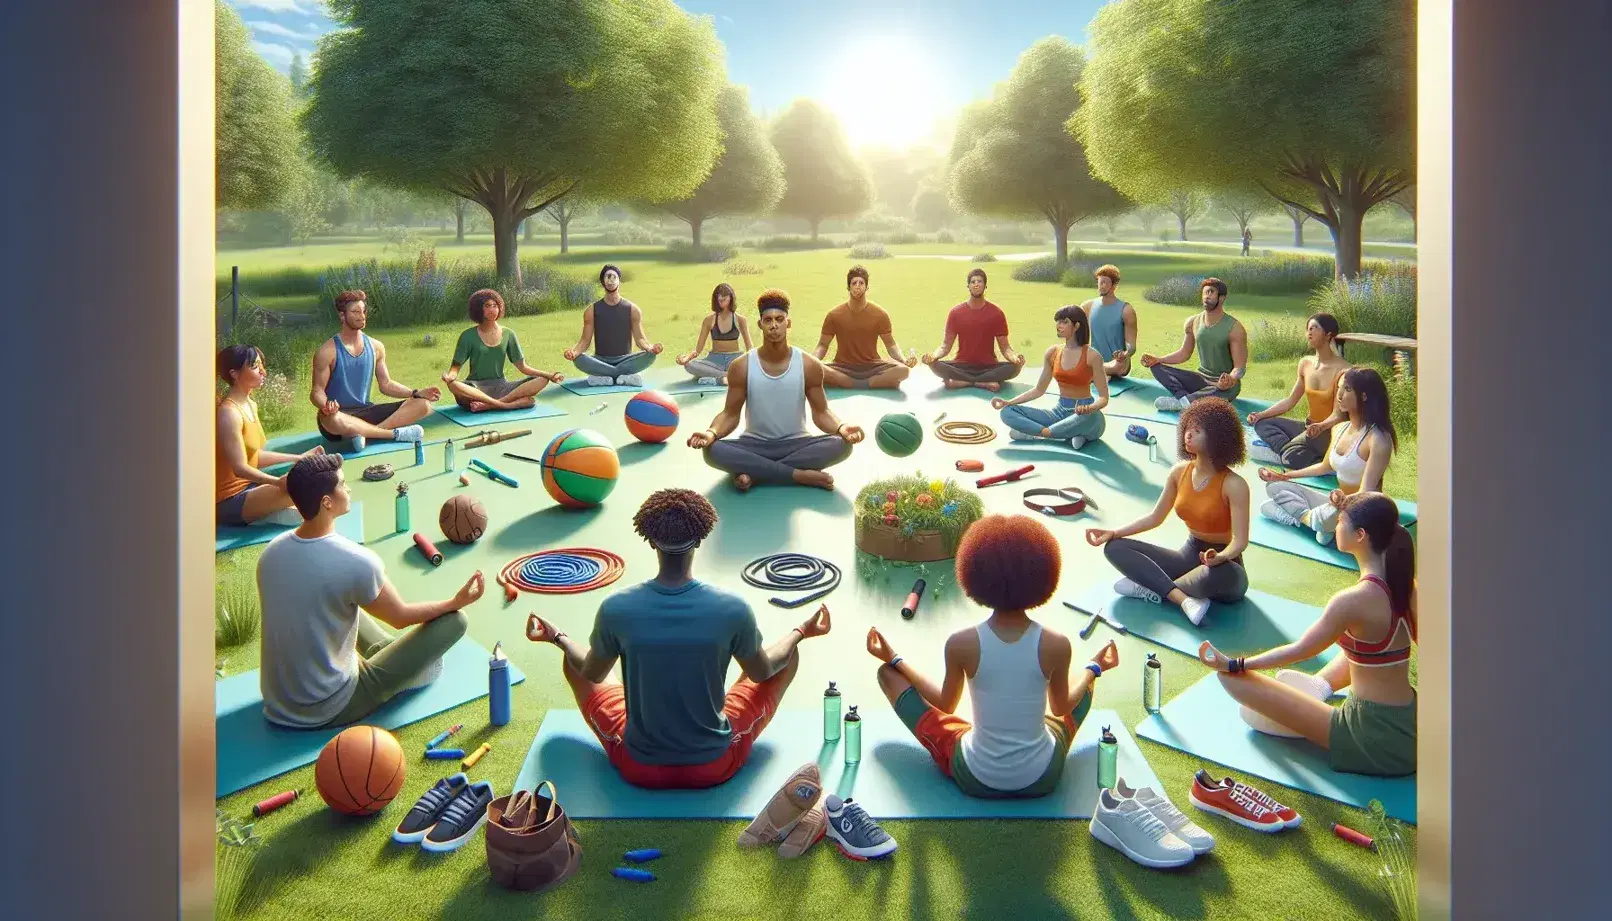 Grupo diverso de personas en ropa deportiva relajándose y ejercitándose en un parque soleado, con objetos de actividad física y naturaleza alrededor.